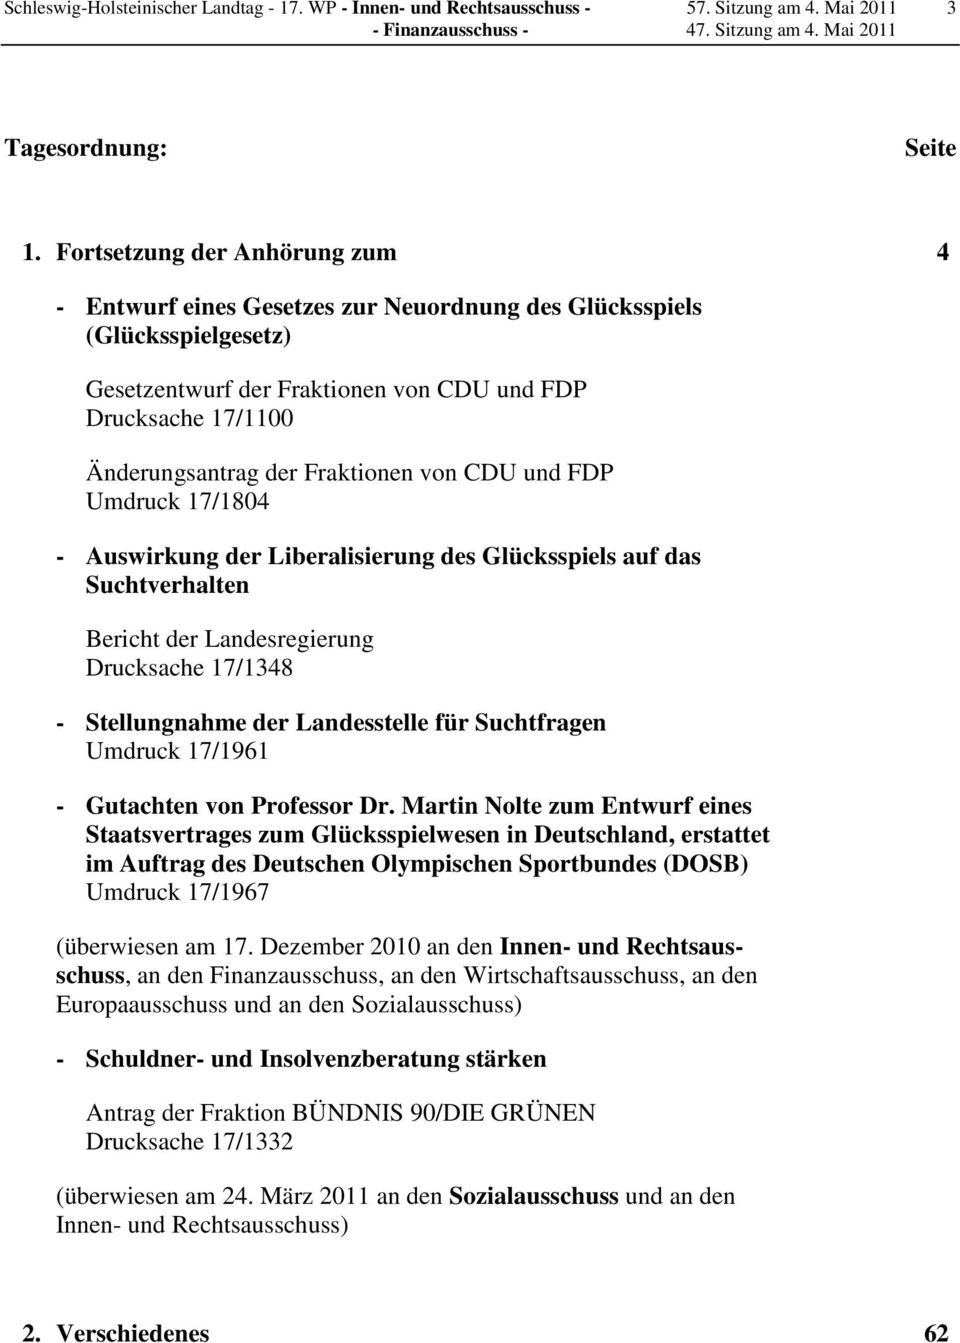 Fraktionen von CDU und FDP Umdruck 17/1804 - Auswirkung der Liberalisierung des Glücksspiels auf das Suchtverhalten Bericht der Landesregierung Drucksache 17/1348 - Stellungnahme der Landesstelle für